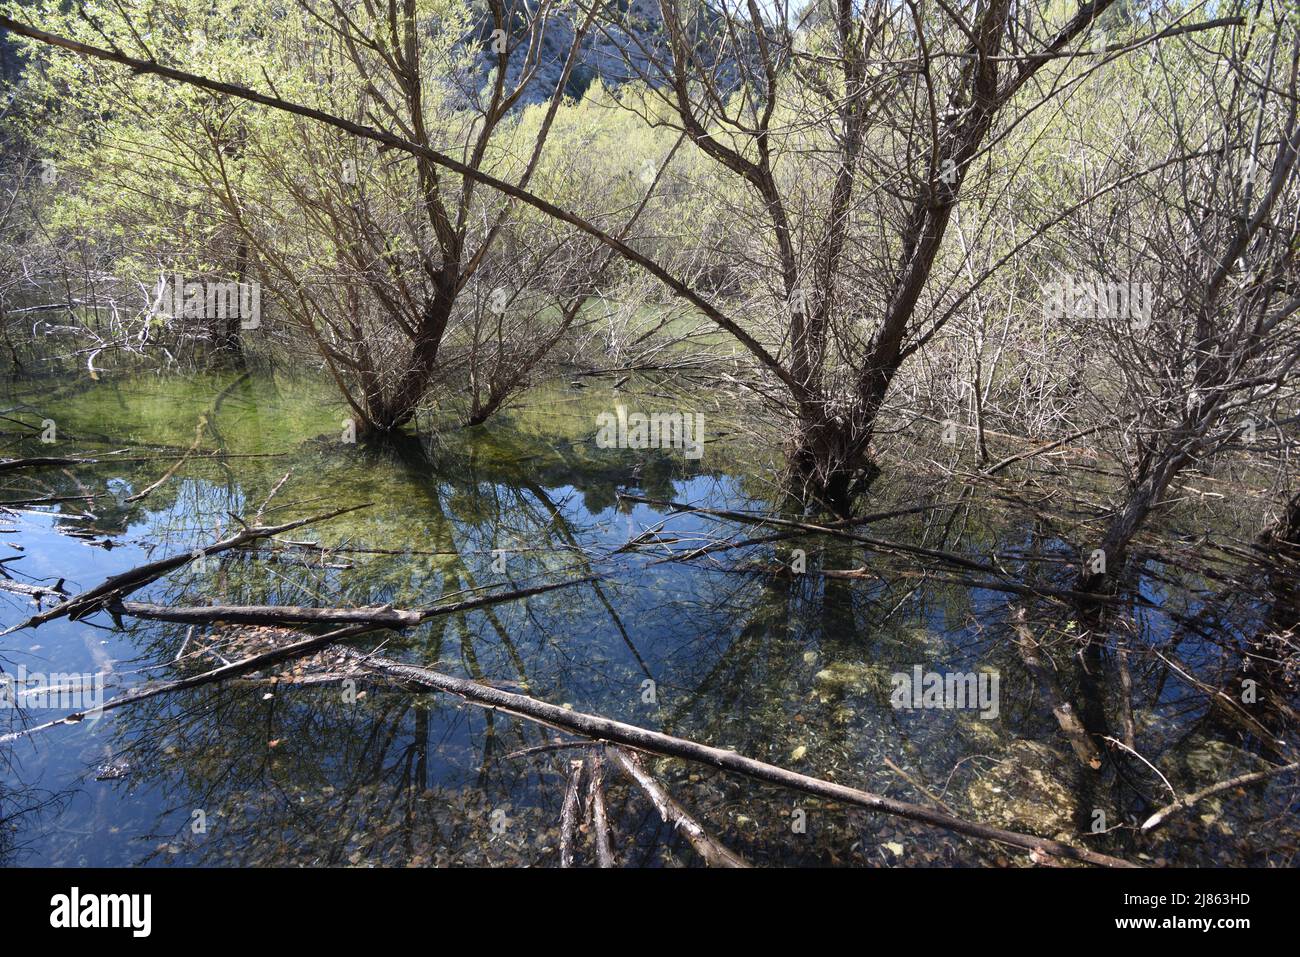 Végétation humide et saules inondés sur la rivière cause Lac Zola dans la réserve naturelle de montagne Sainte-victoire Aix-en-Provence Provence Provence France Banque D'Images